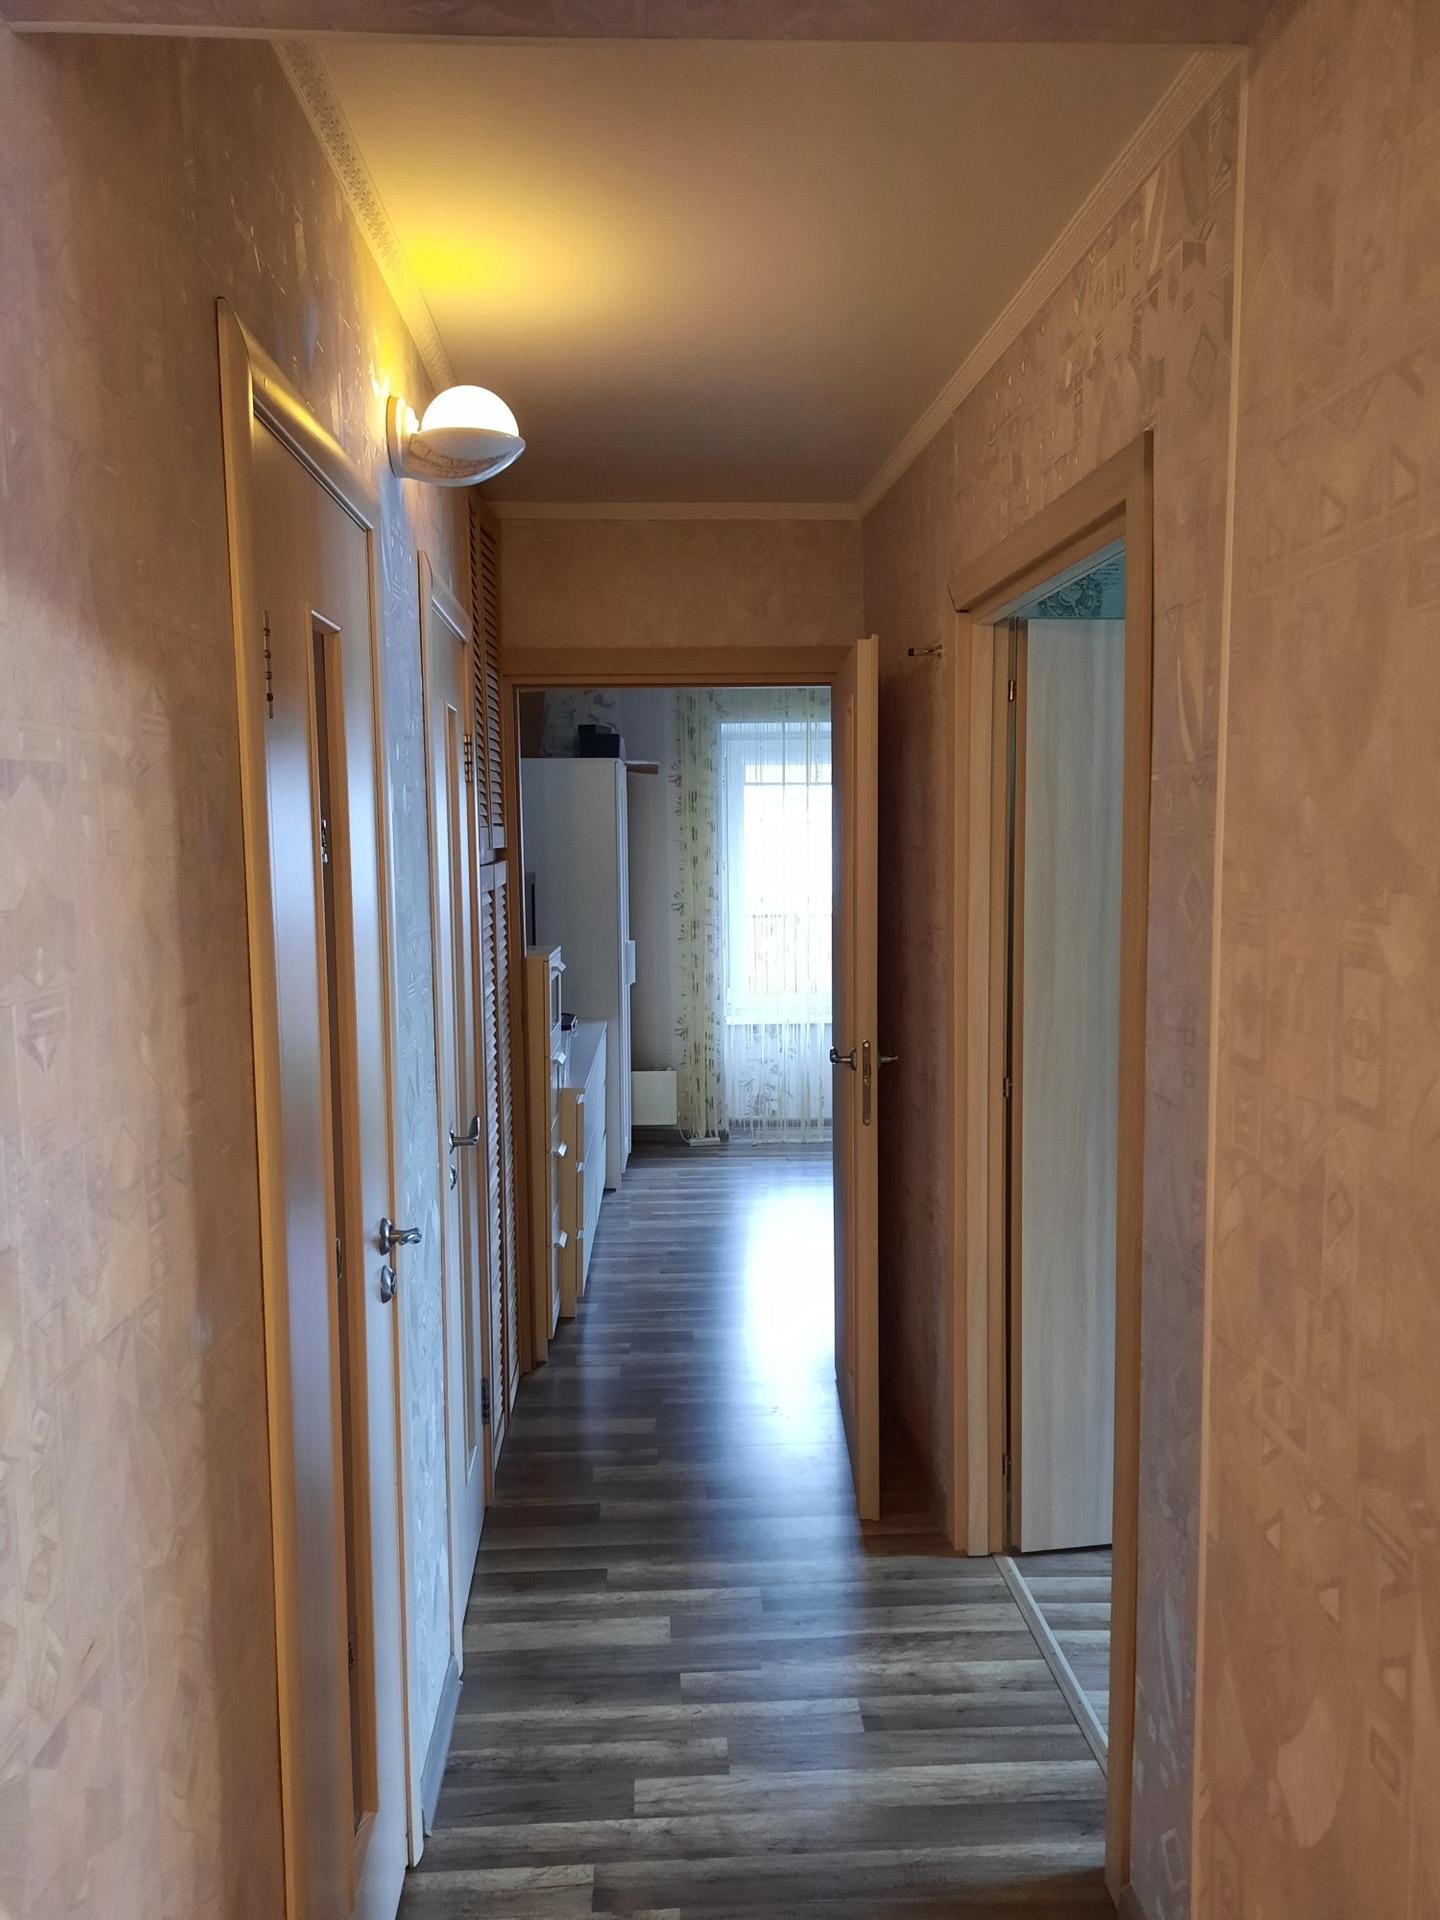 Rent 3-room apartment, 64 m²